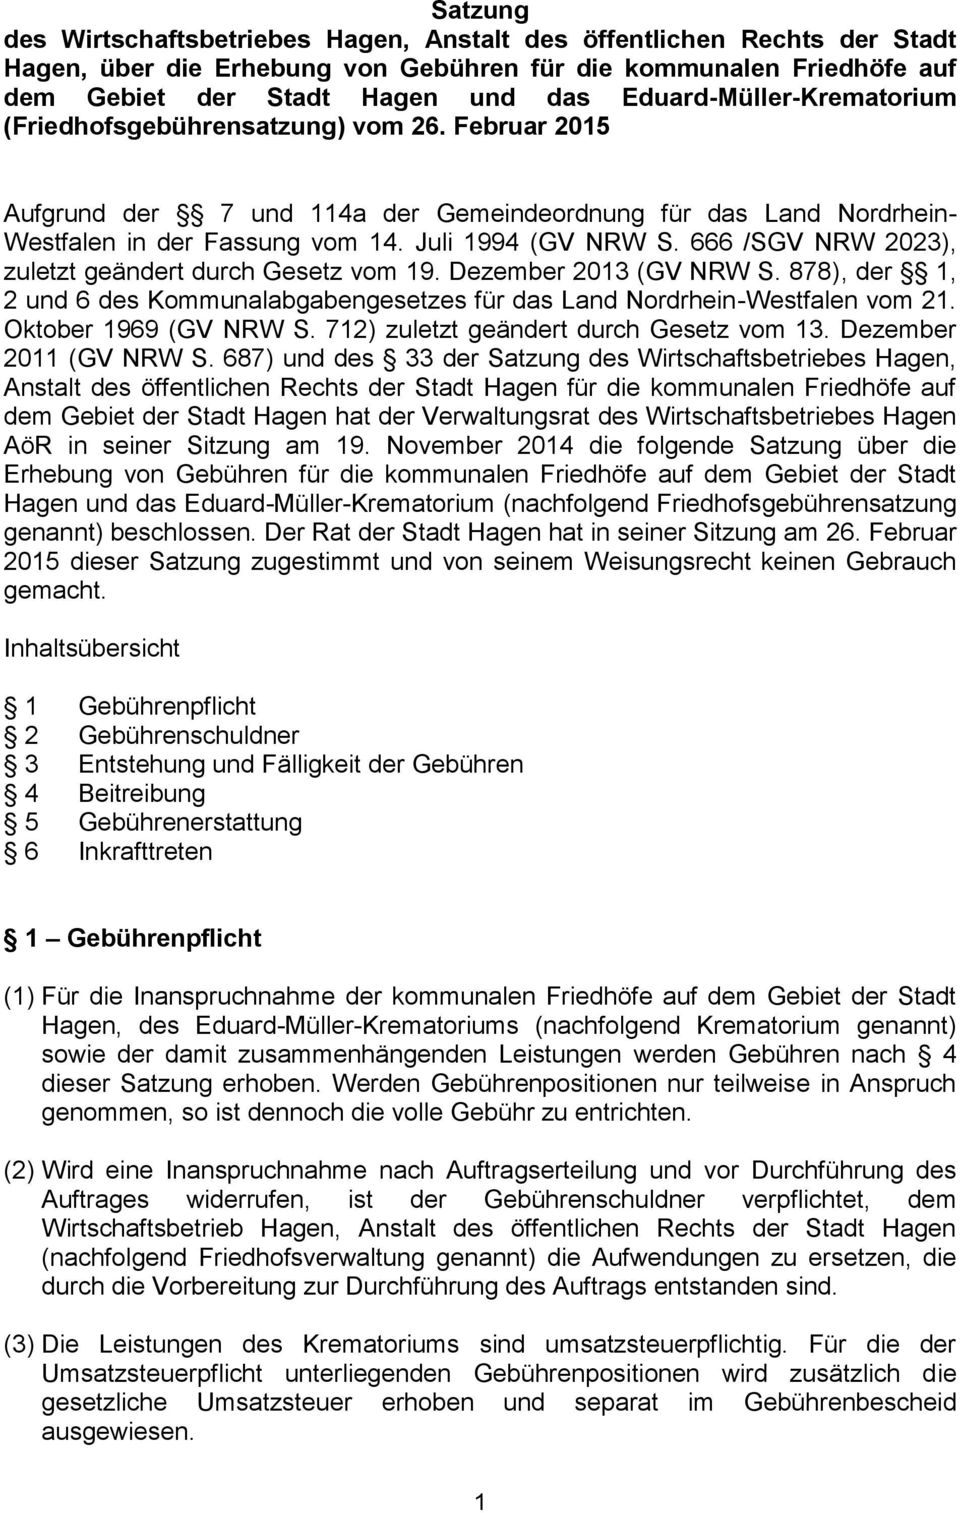 666 /SGV NRW 2023), zuletzt geändert durch Gesetz vom 19. Dezember 2013 (GV NRW S. 878), der 1, 2 und 6 des Kommunalabgabengesetzes für das Land Nordrhein-Westfalen vom 21. Oktober 1969 (GV NRW S.